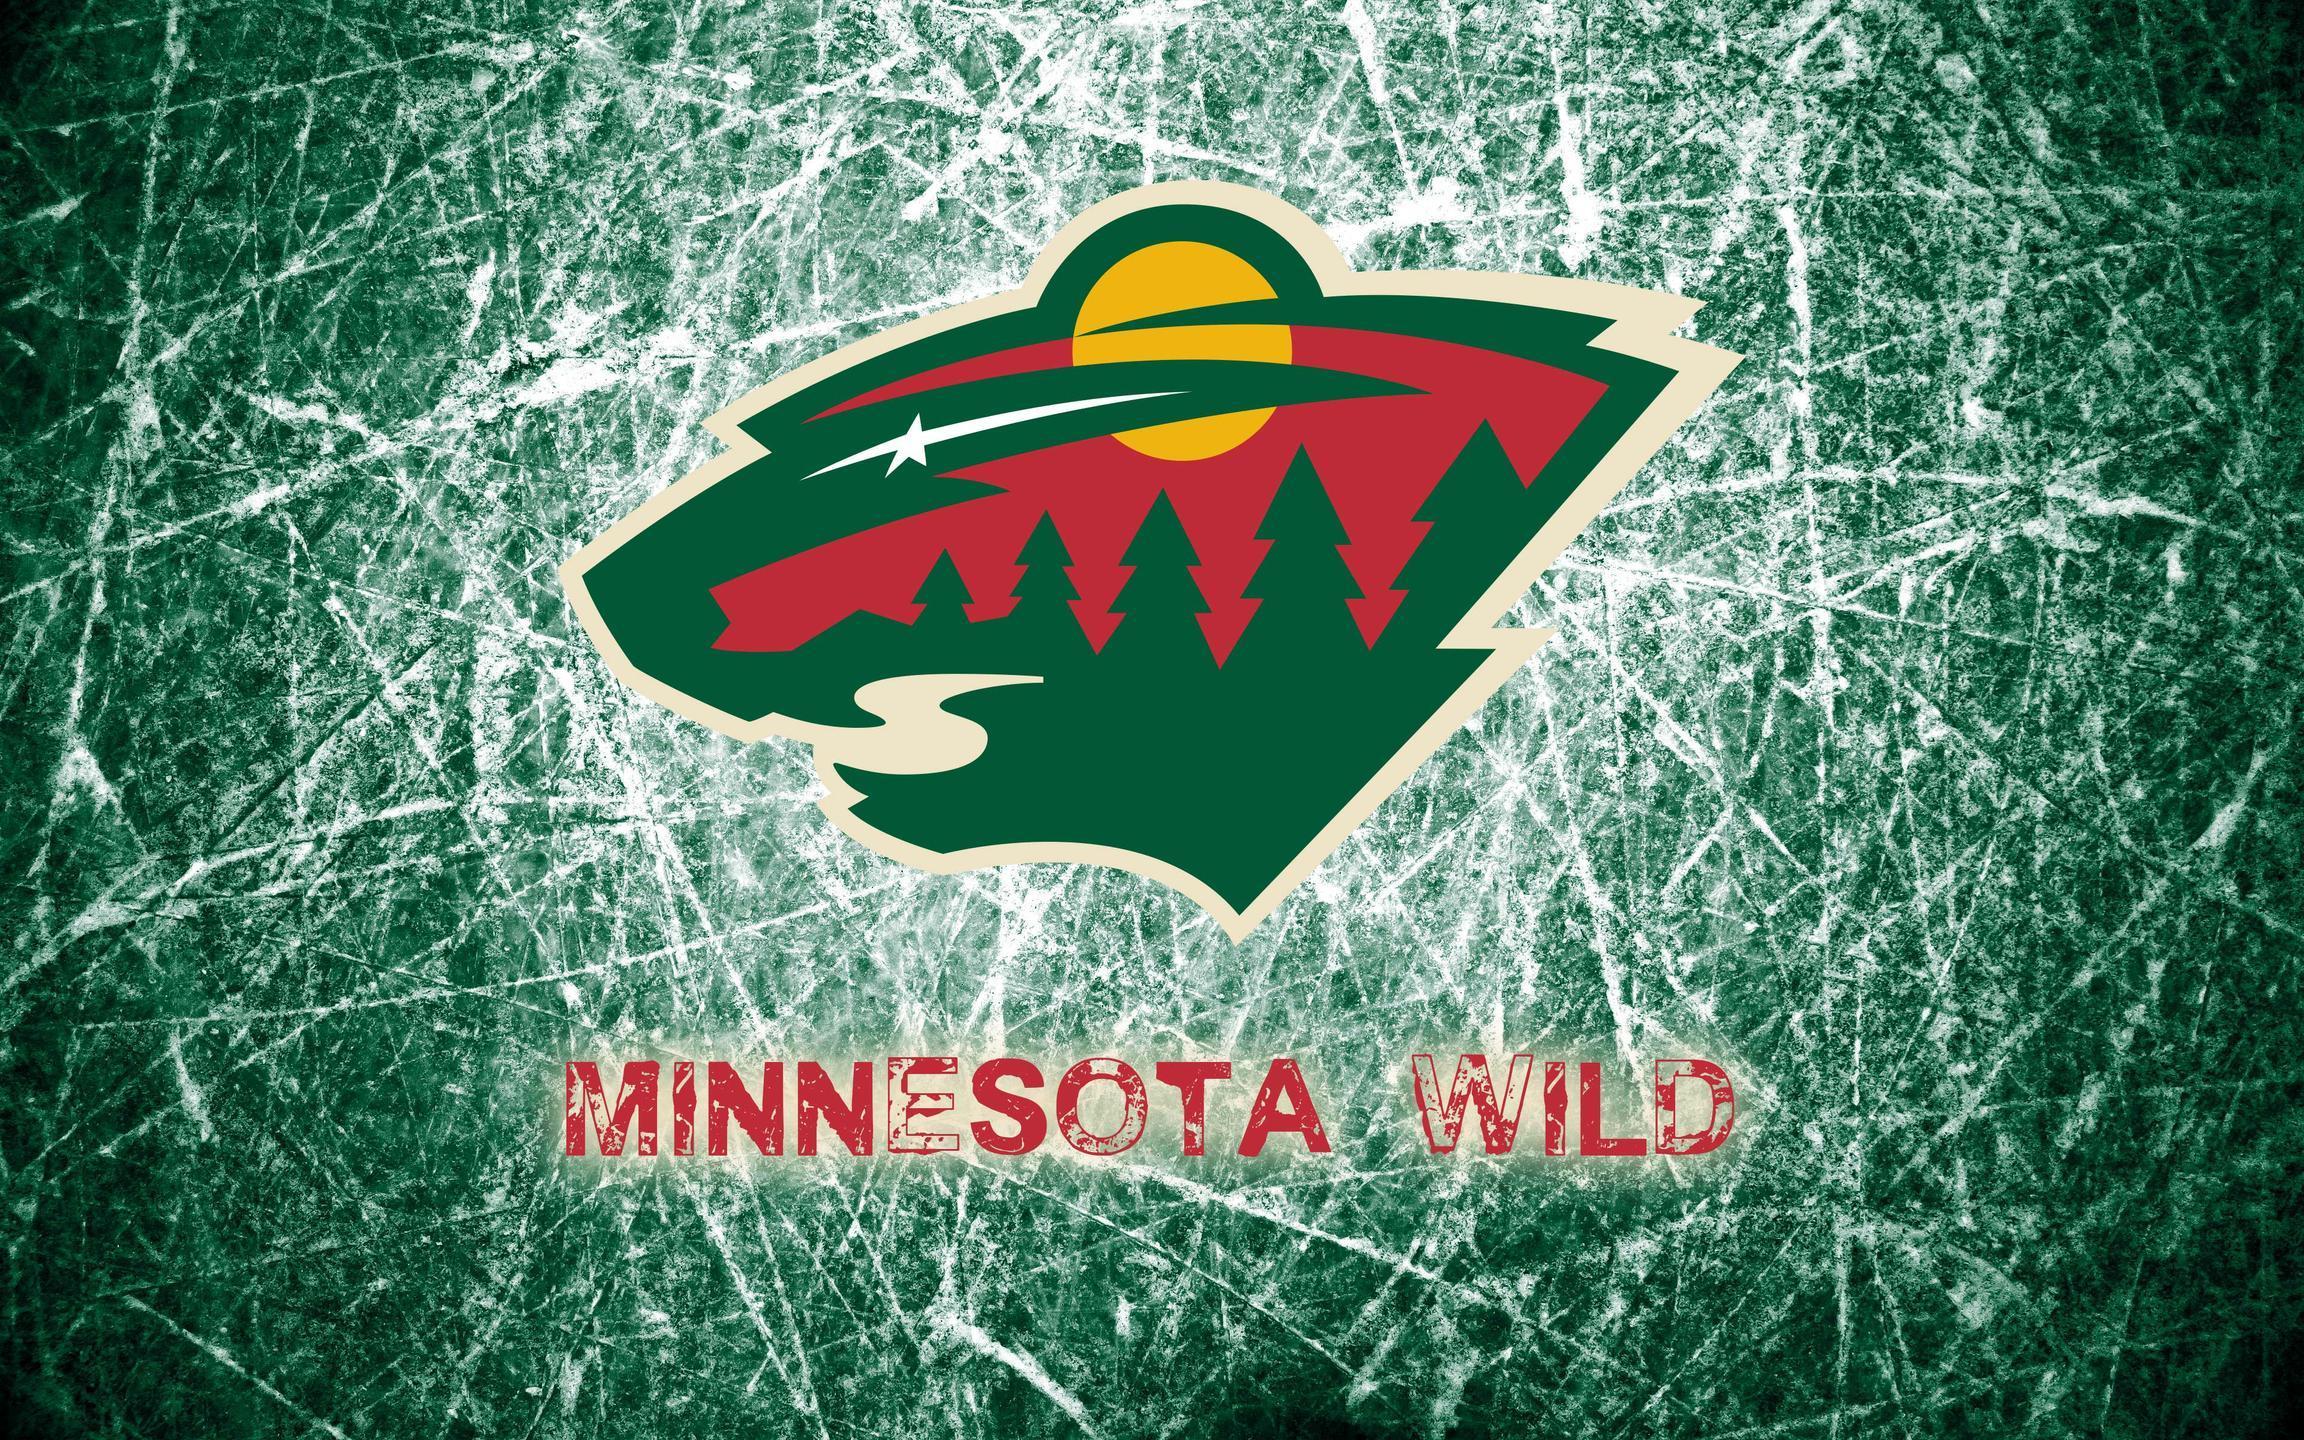 Minnesota Wild 2014 Logo Wallpaper Wide or HD